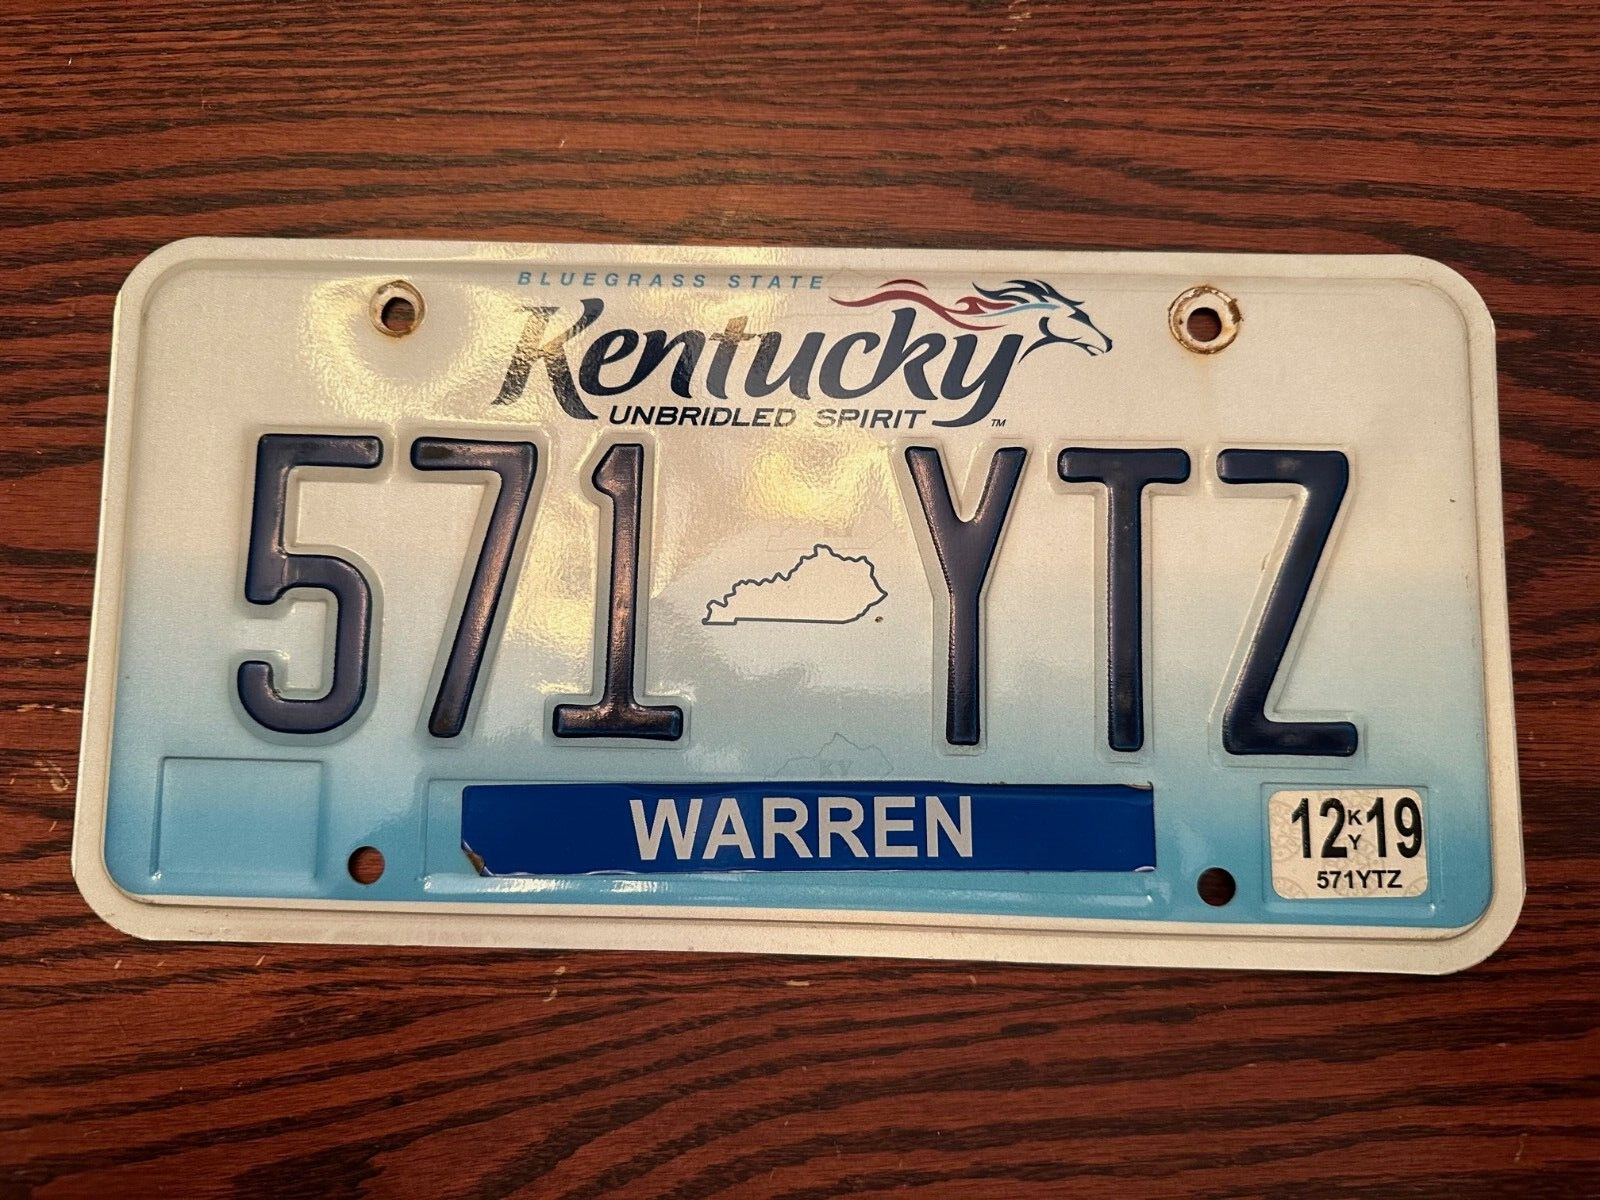 2019 Kentucky License Plate 571 YTZ Unbridled Spirit KY USA Warren Authentic Dec